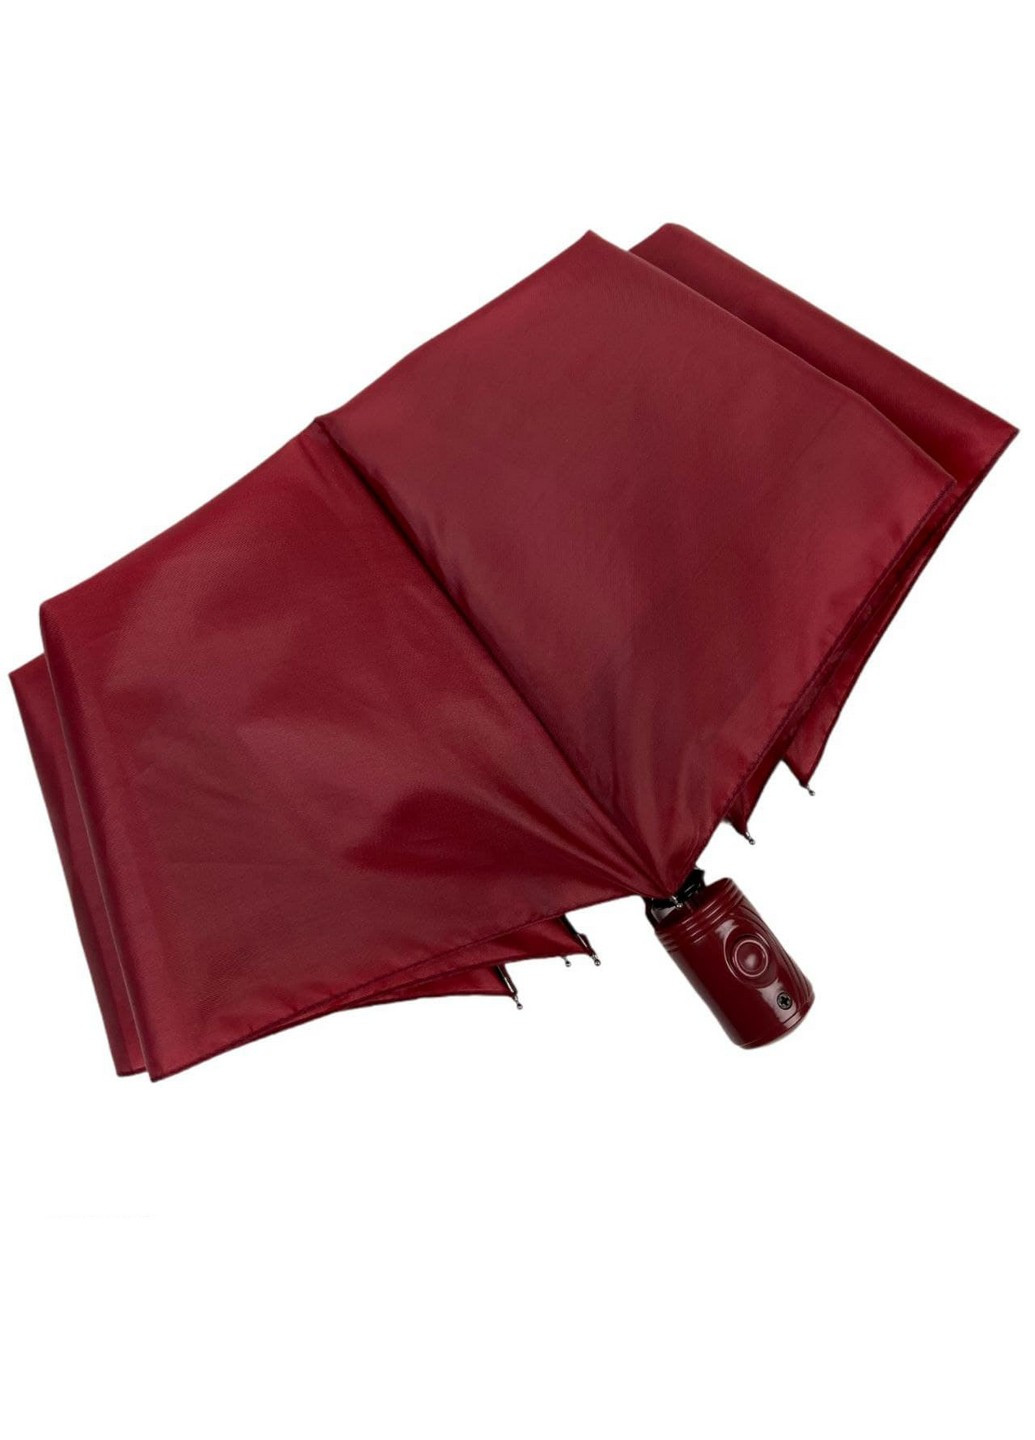 Женский зонт полуавтомат 98 см SL (258639163)